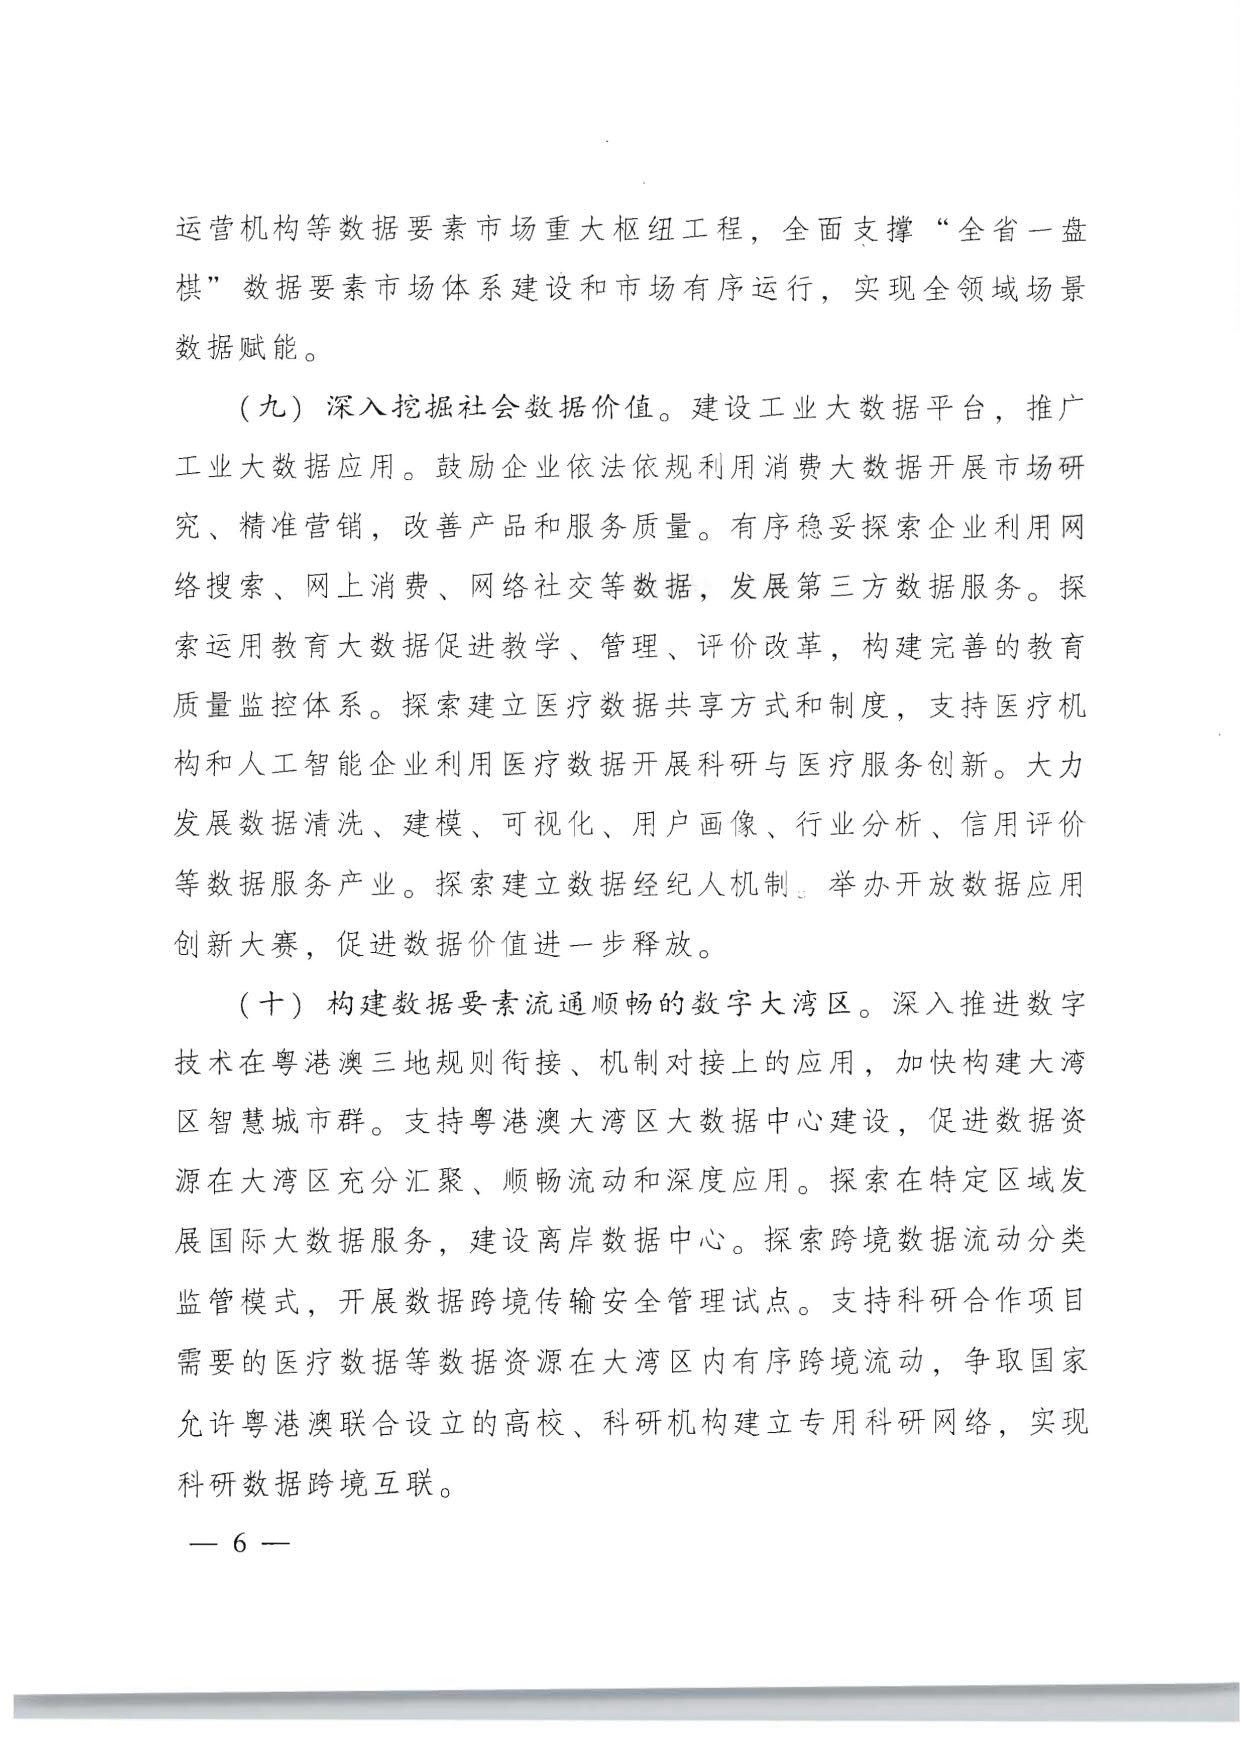 广东省人民政府关于加快数字化发展的意见_06.jpg